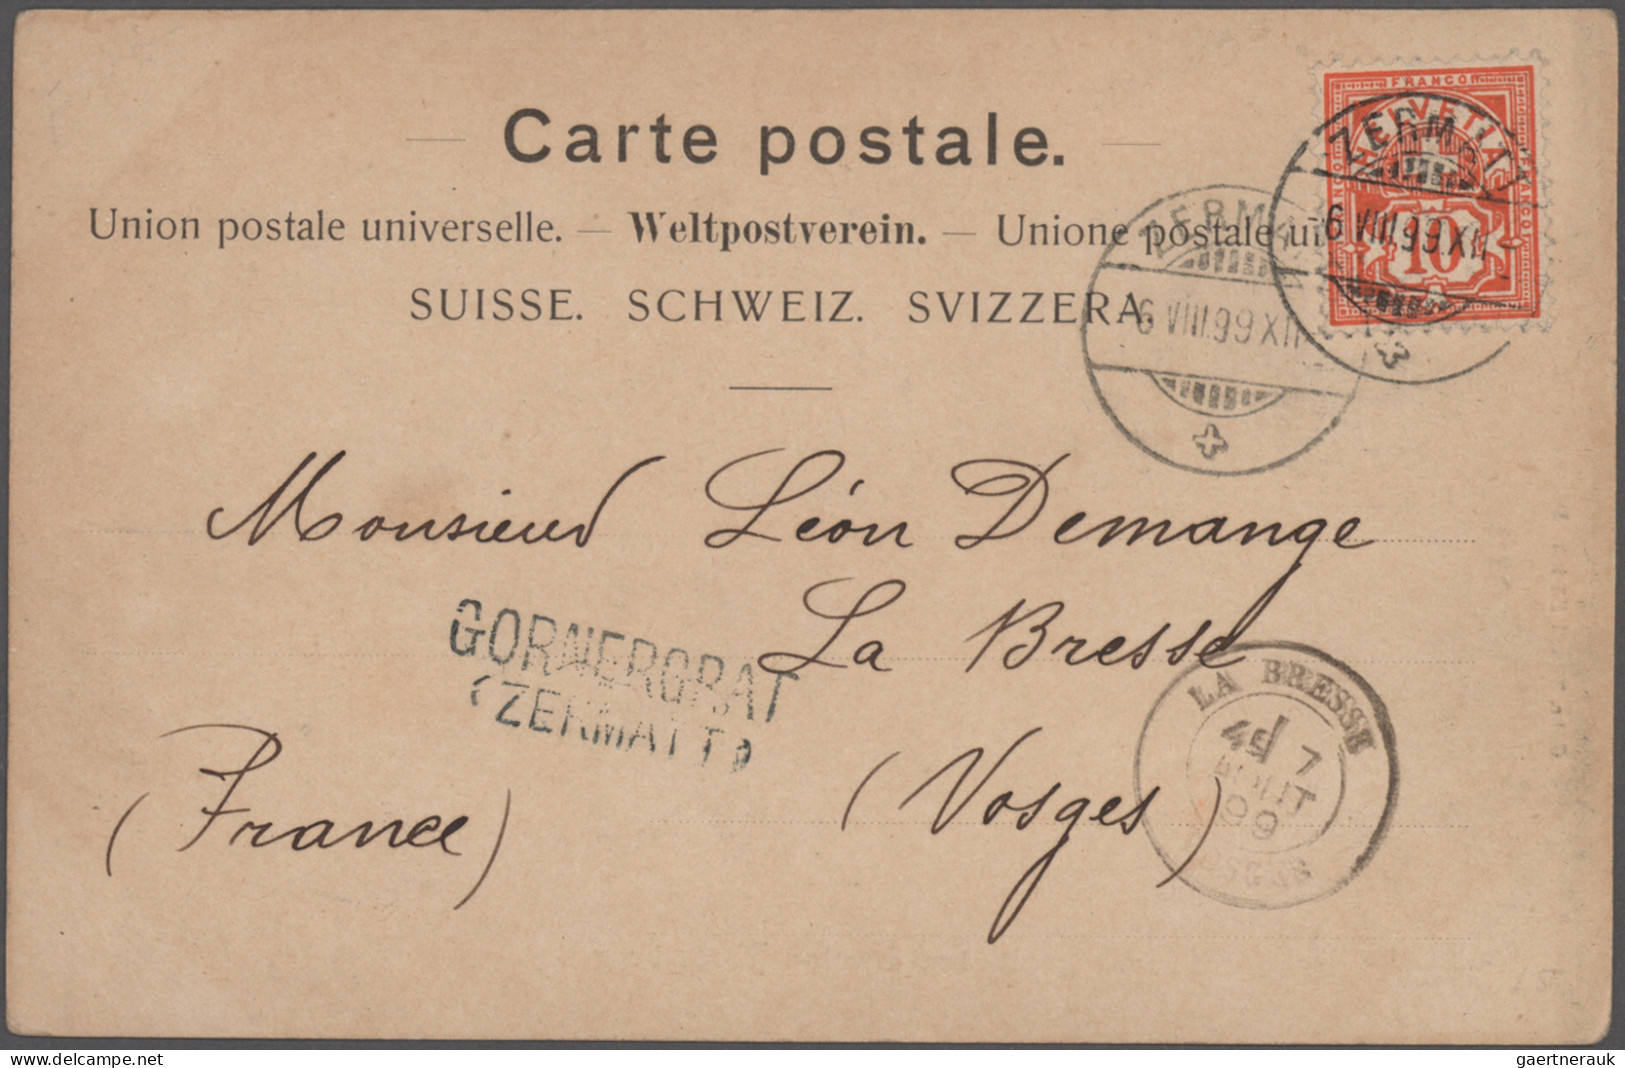 Schweiz: 1887/1975, vielseitige Partie von ca. 110 Briefen und Karten mit etlich